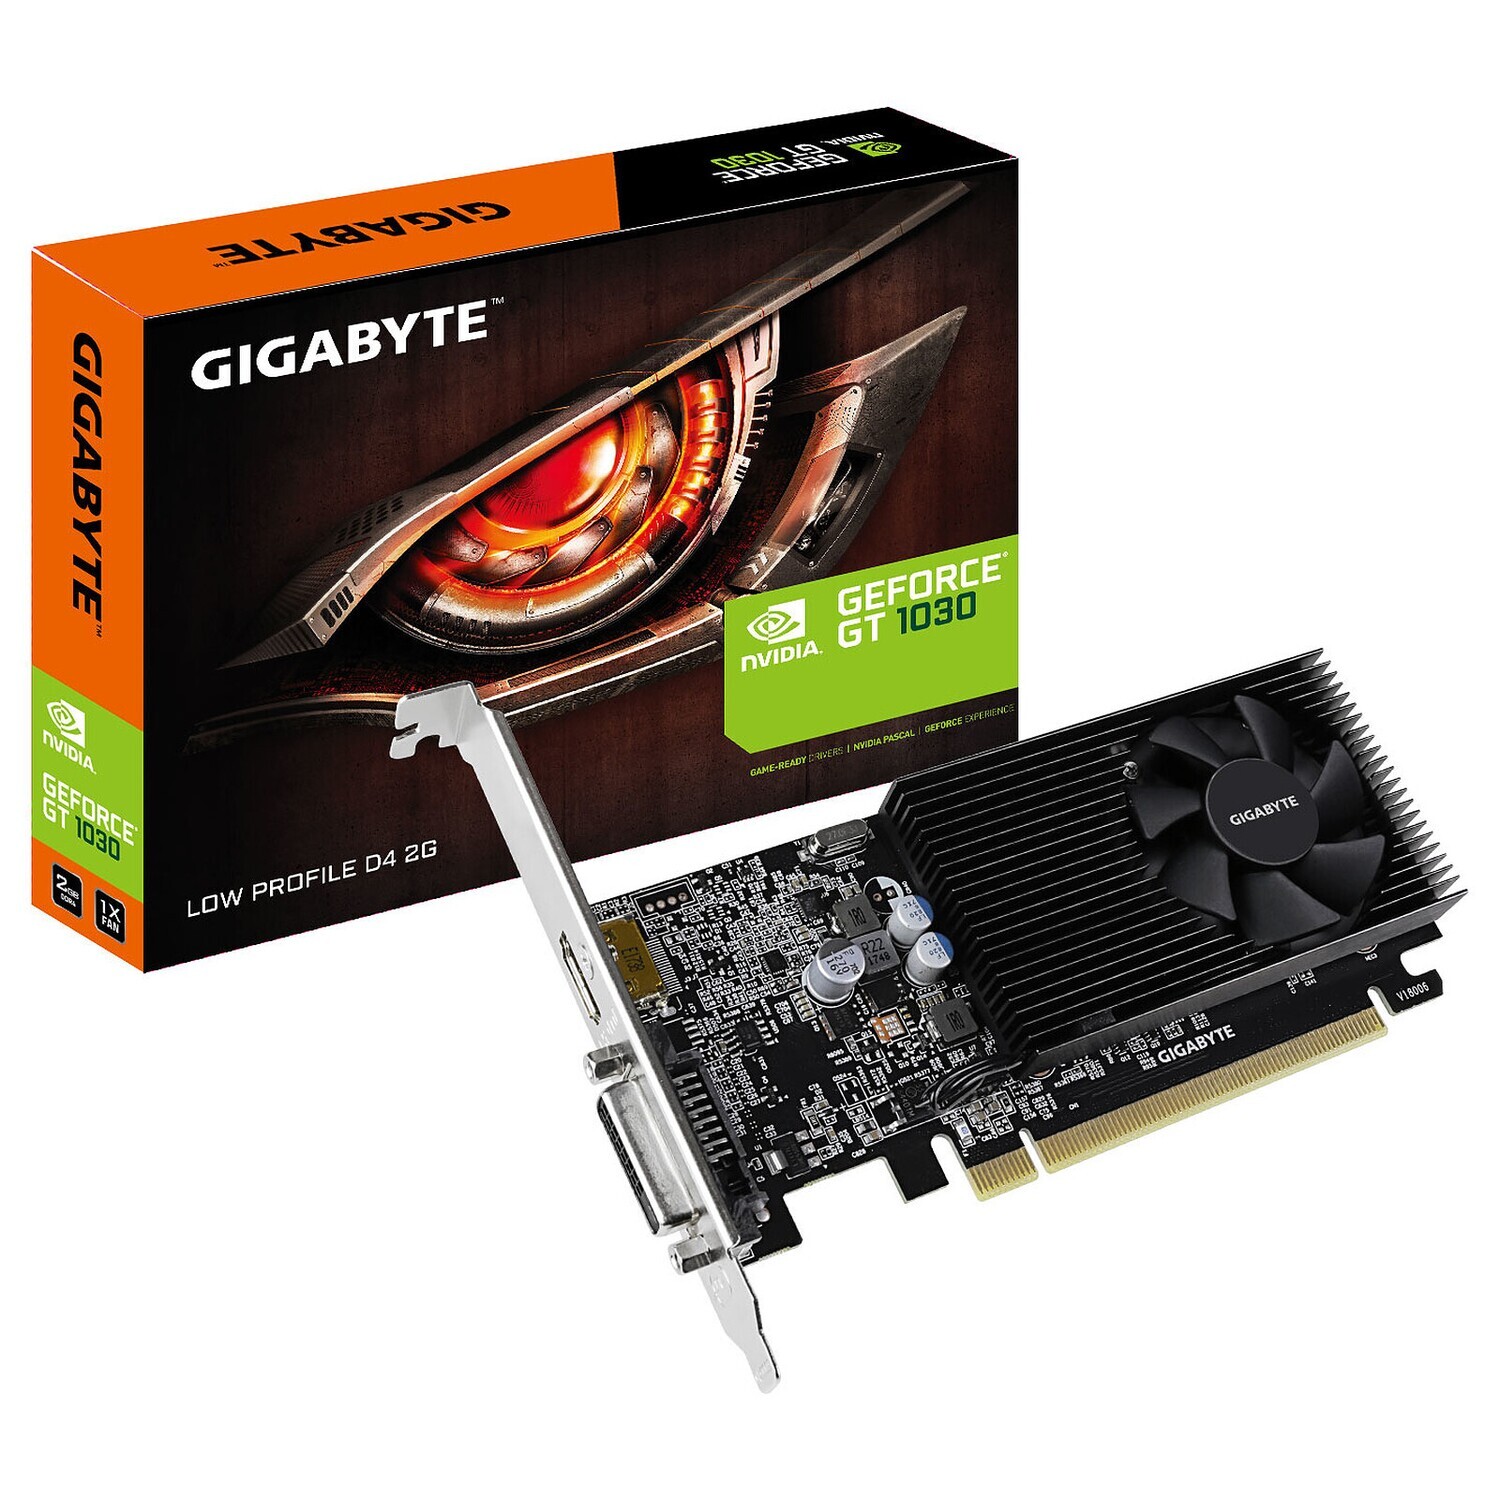 Gigabyte GeForce GT 1030 Low Profile D4 2G, 2048 MB DDR4